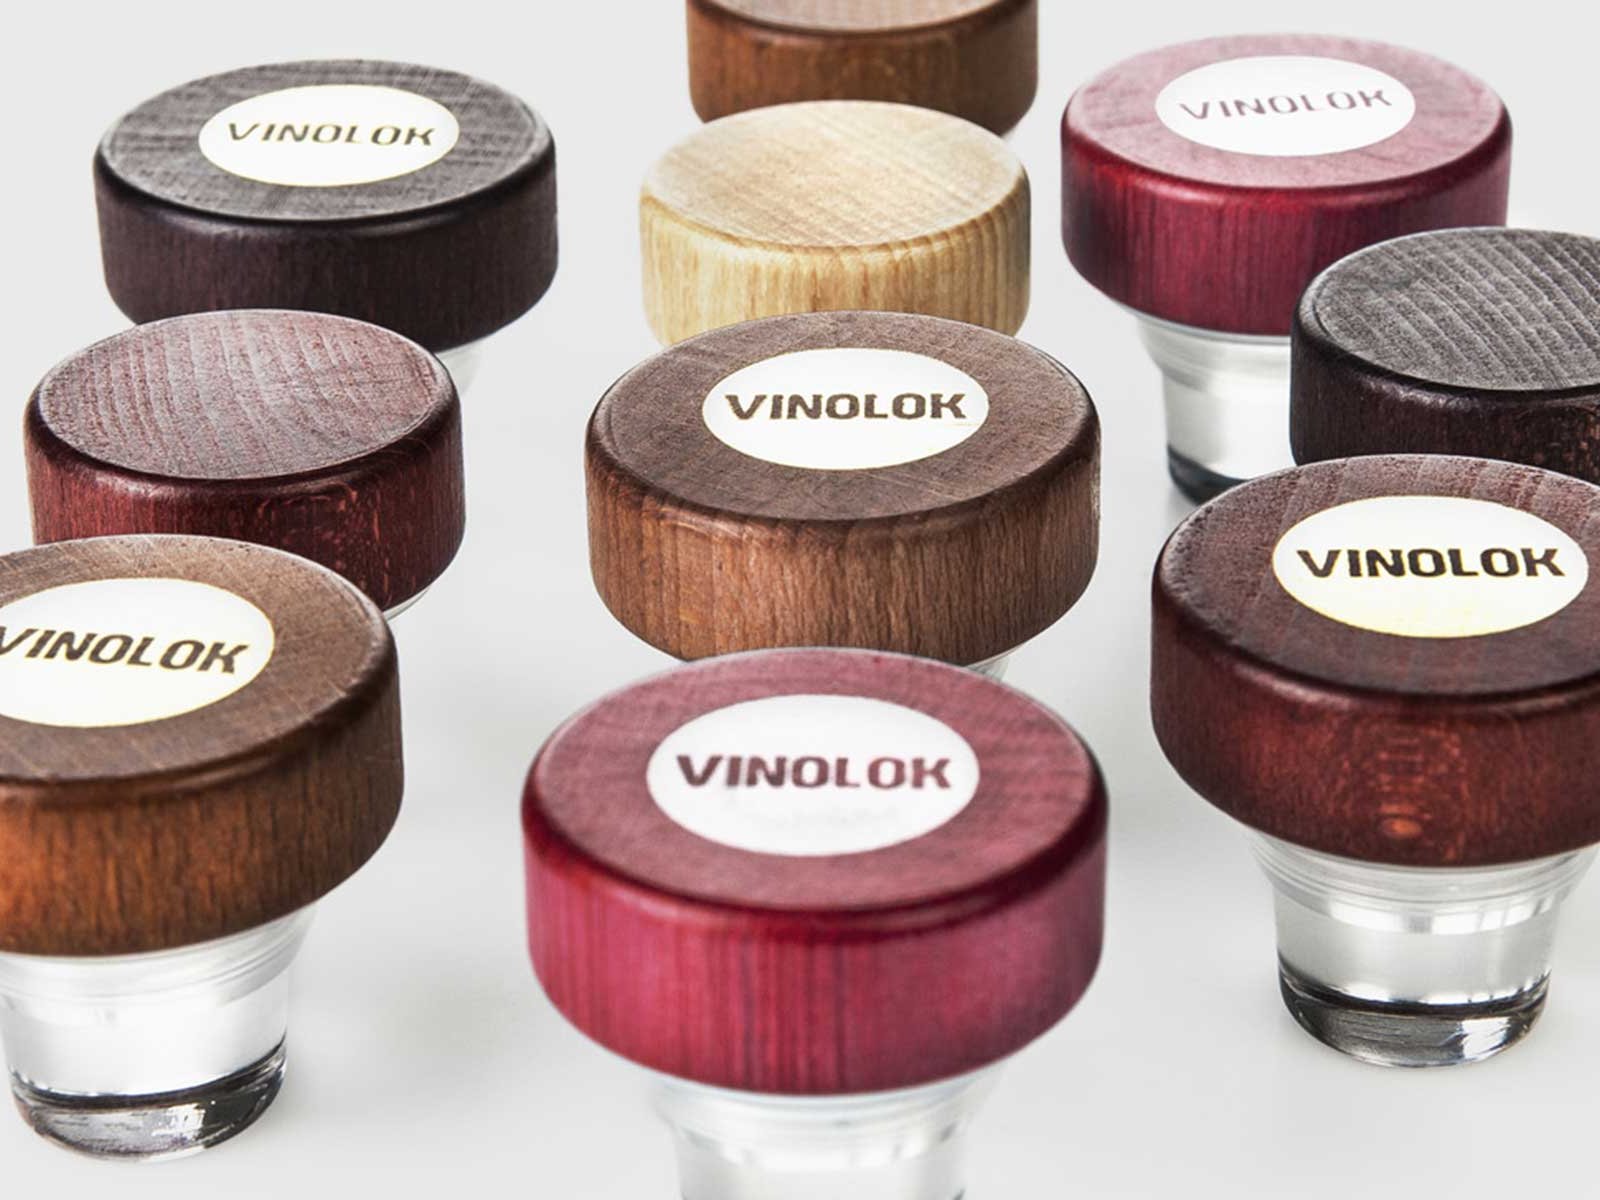 Der Vinolok ist in mehreren unterschiedlichen Farben erhältlich.